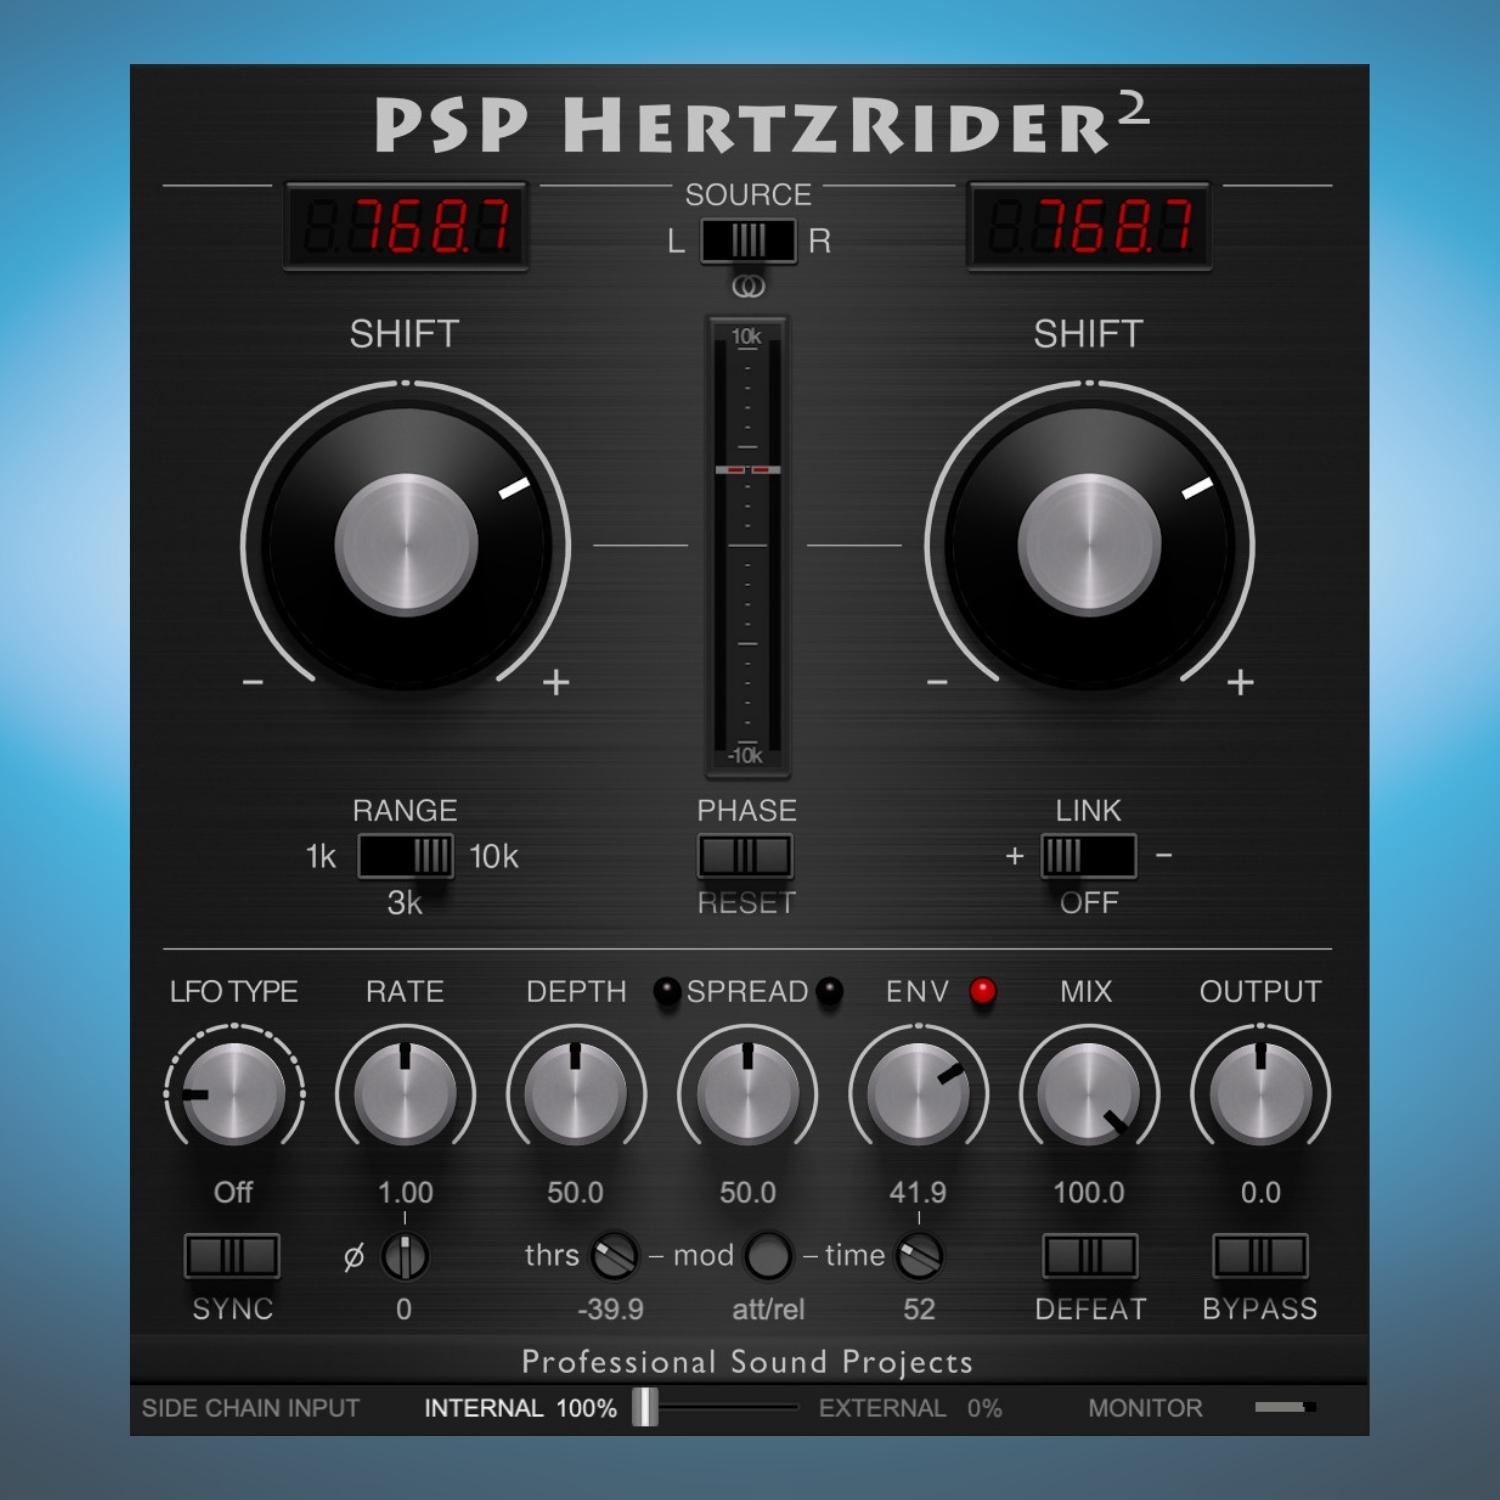 PSP Audioware PSP HertzRider2